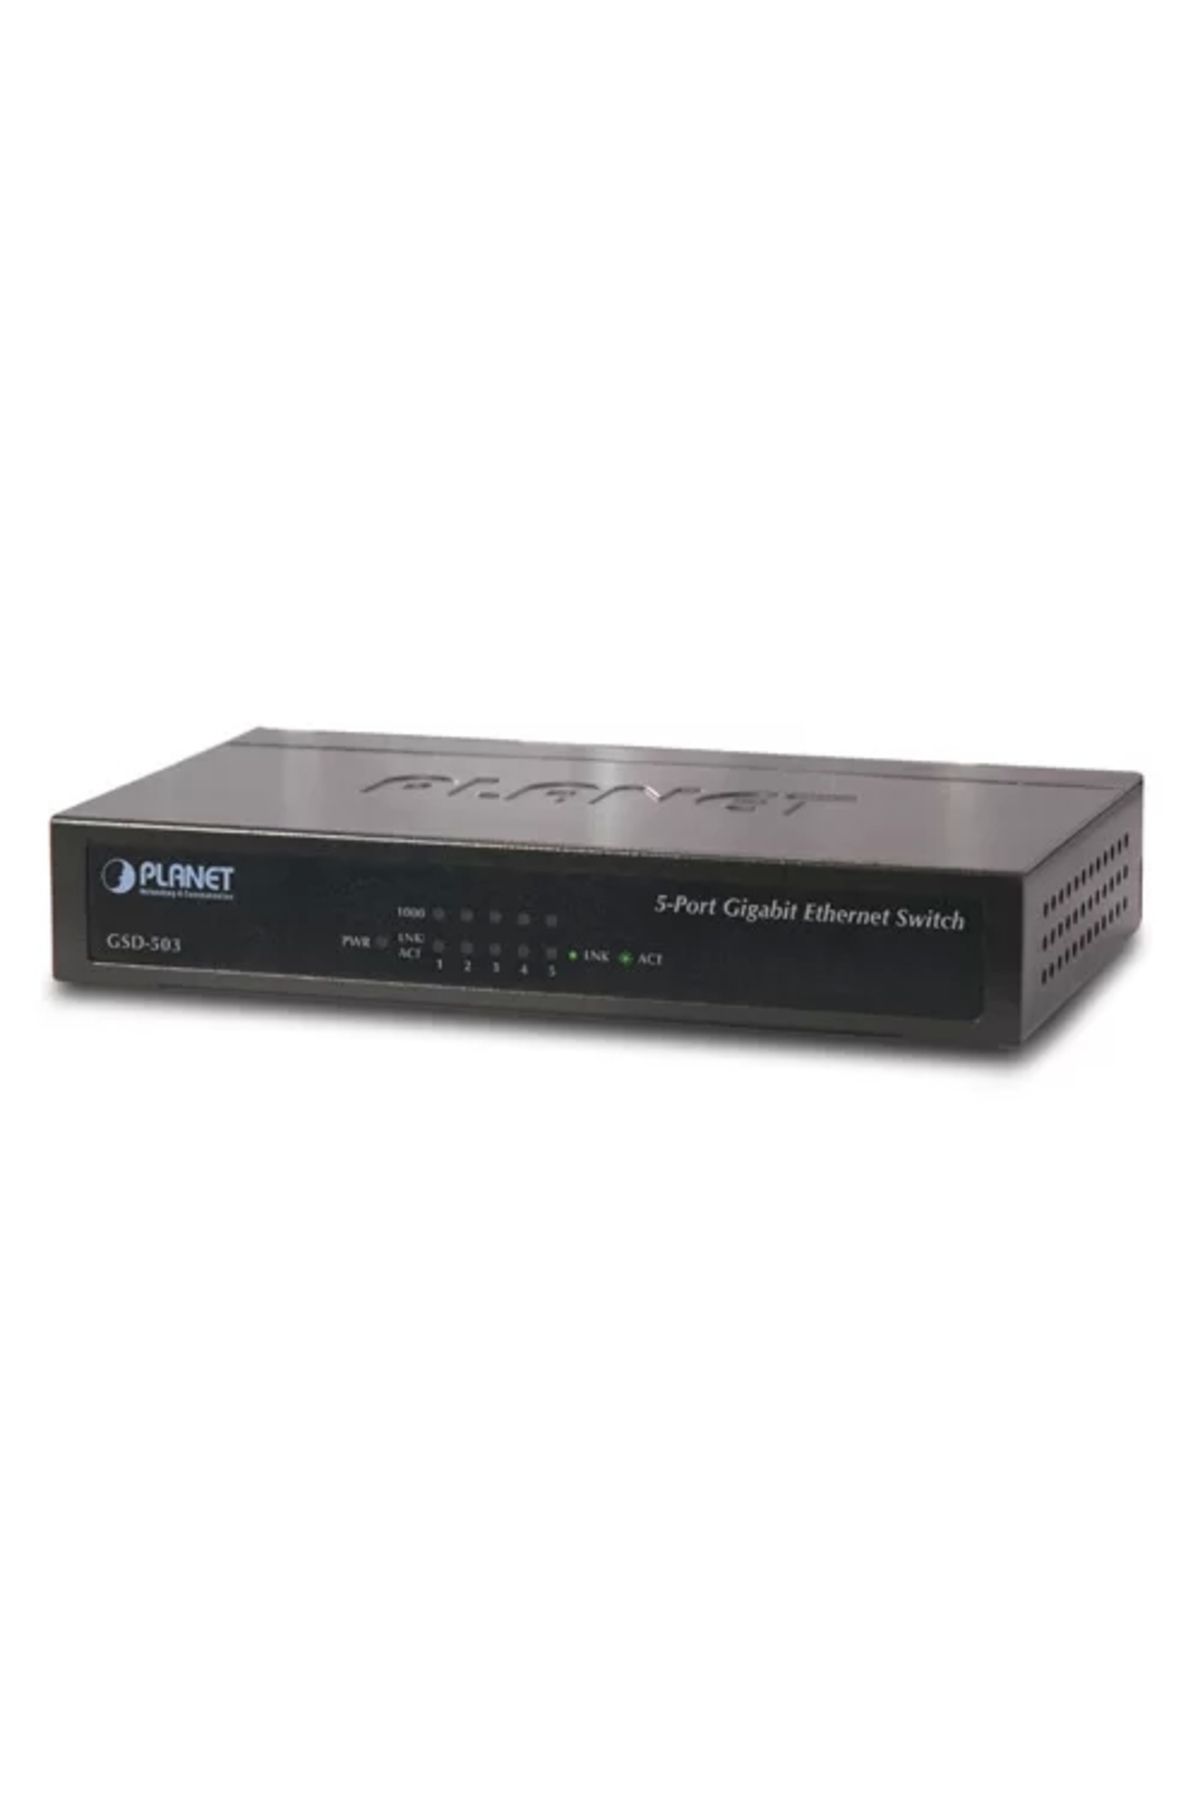 Genel Markalar 5 Port PL-GSD-503 10/100/1000 Mbps Gigabit Ethernet Switch (Metal case)